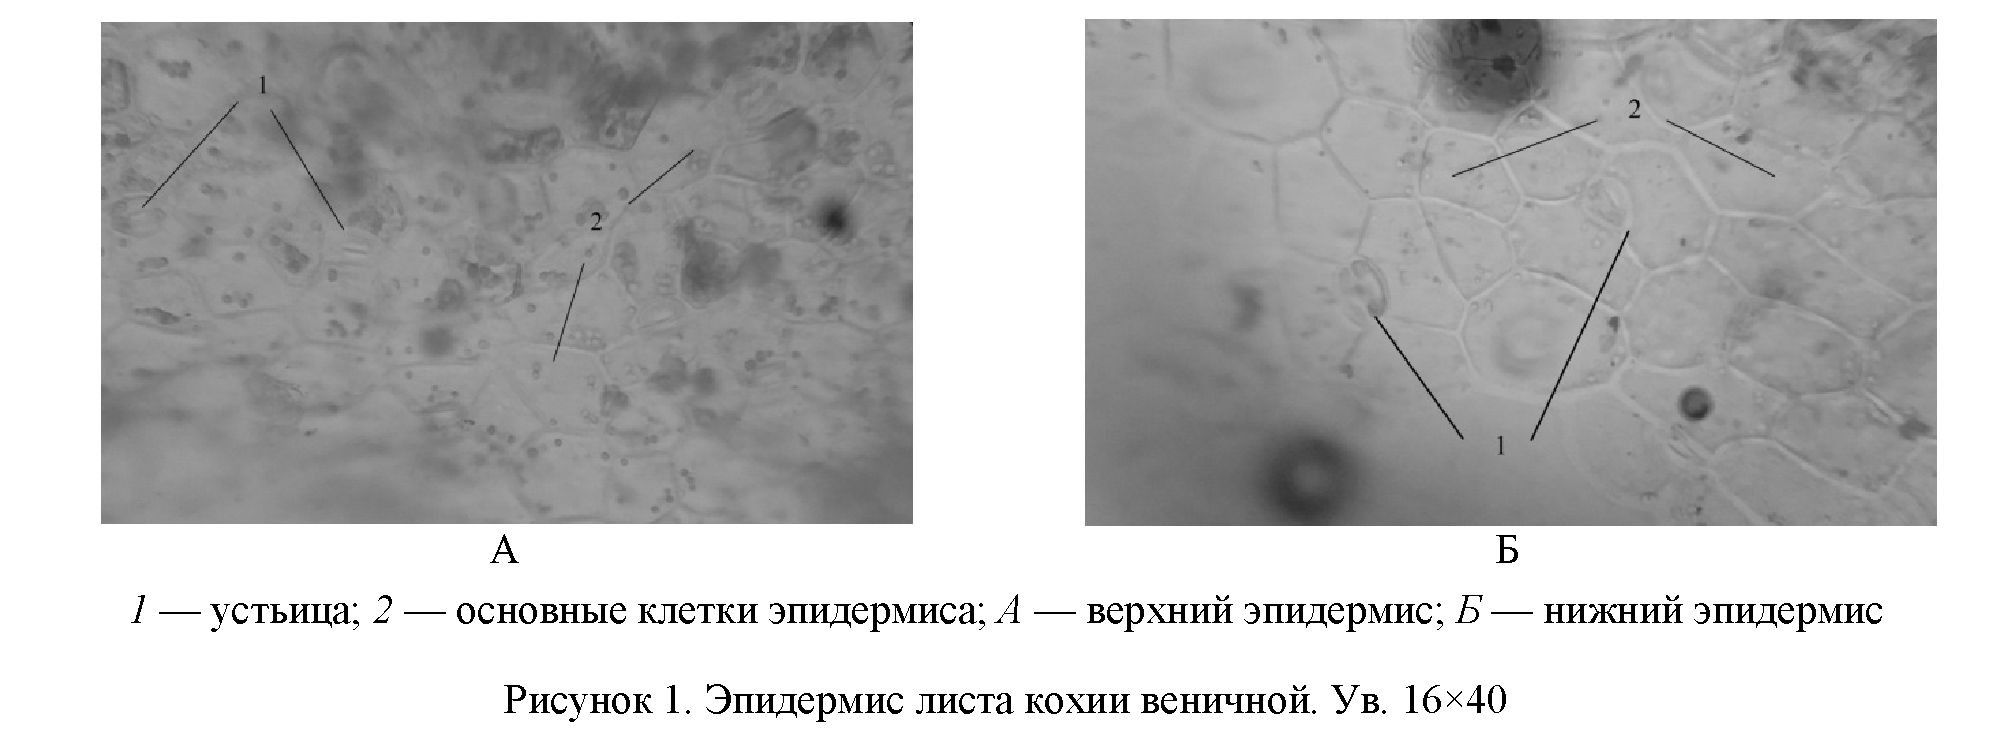 Морфолого-анатомическое исследование Kochia prostratа и Kochia scoparia